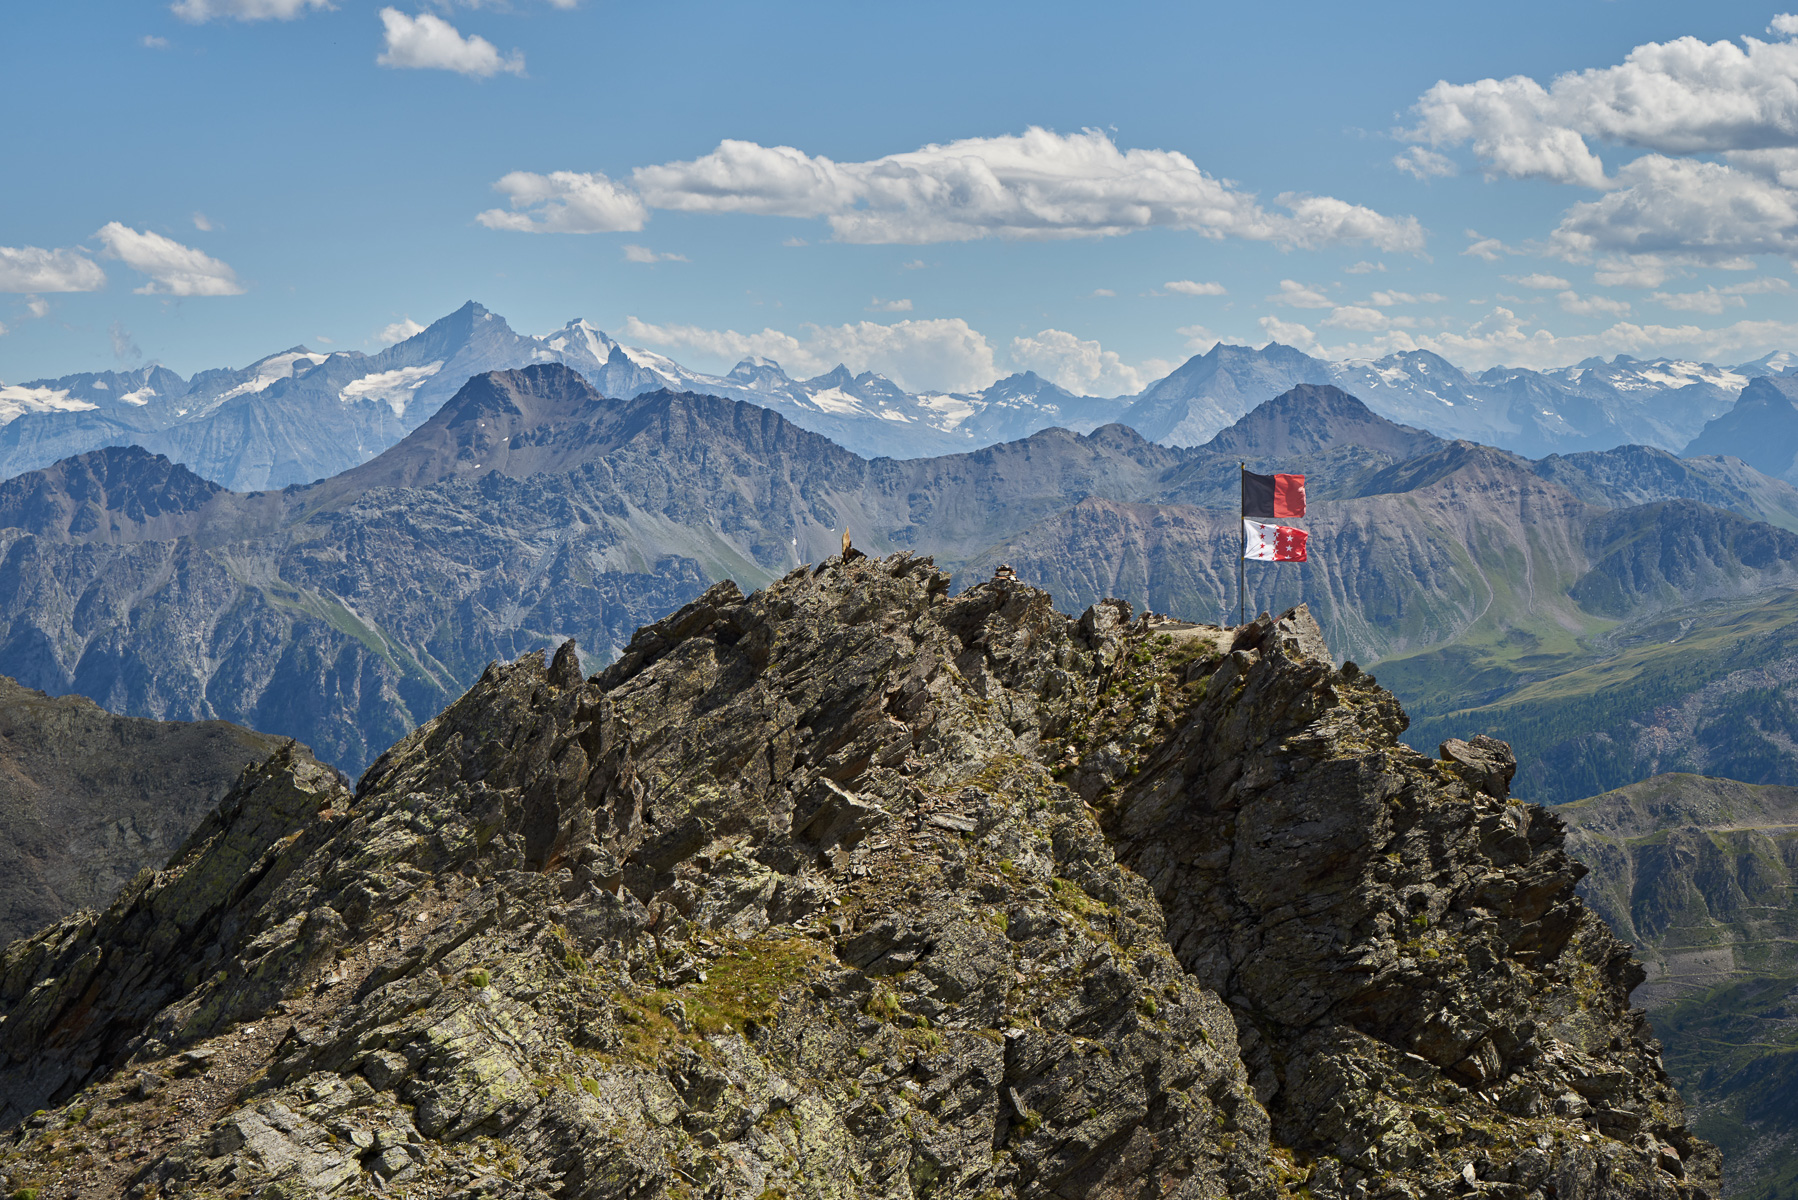 Berg 6 des Tages und letzter Gipfel (aber ohne Panorama) der herrlichen Panoramarunde an der Grenze zwischen Wallis und Aosta.